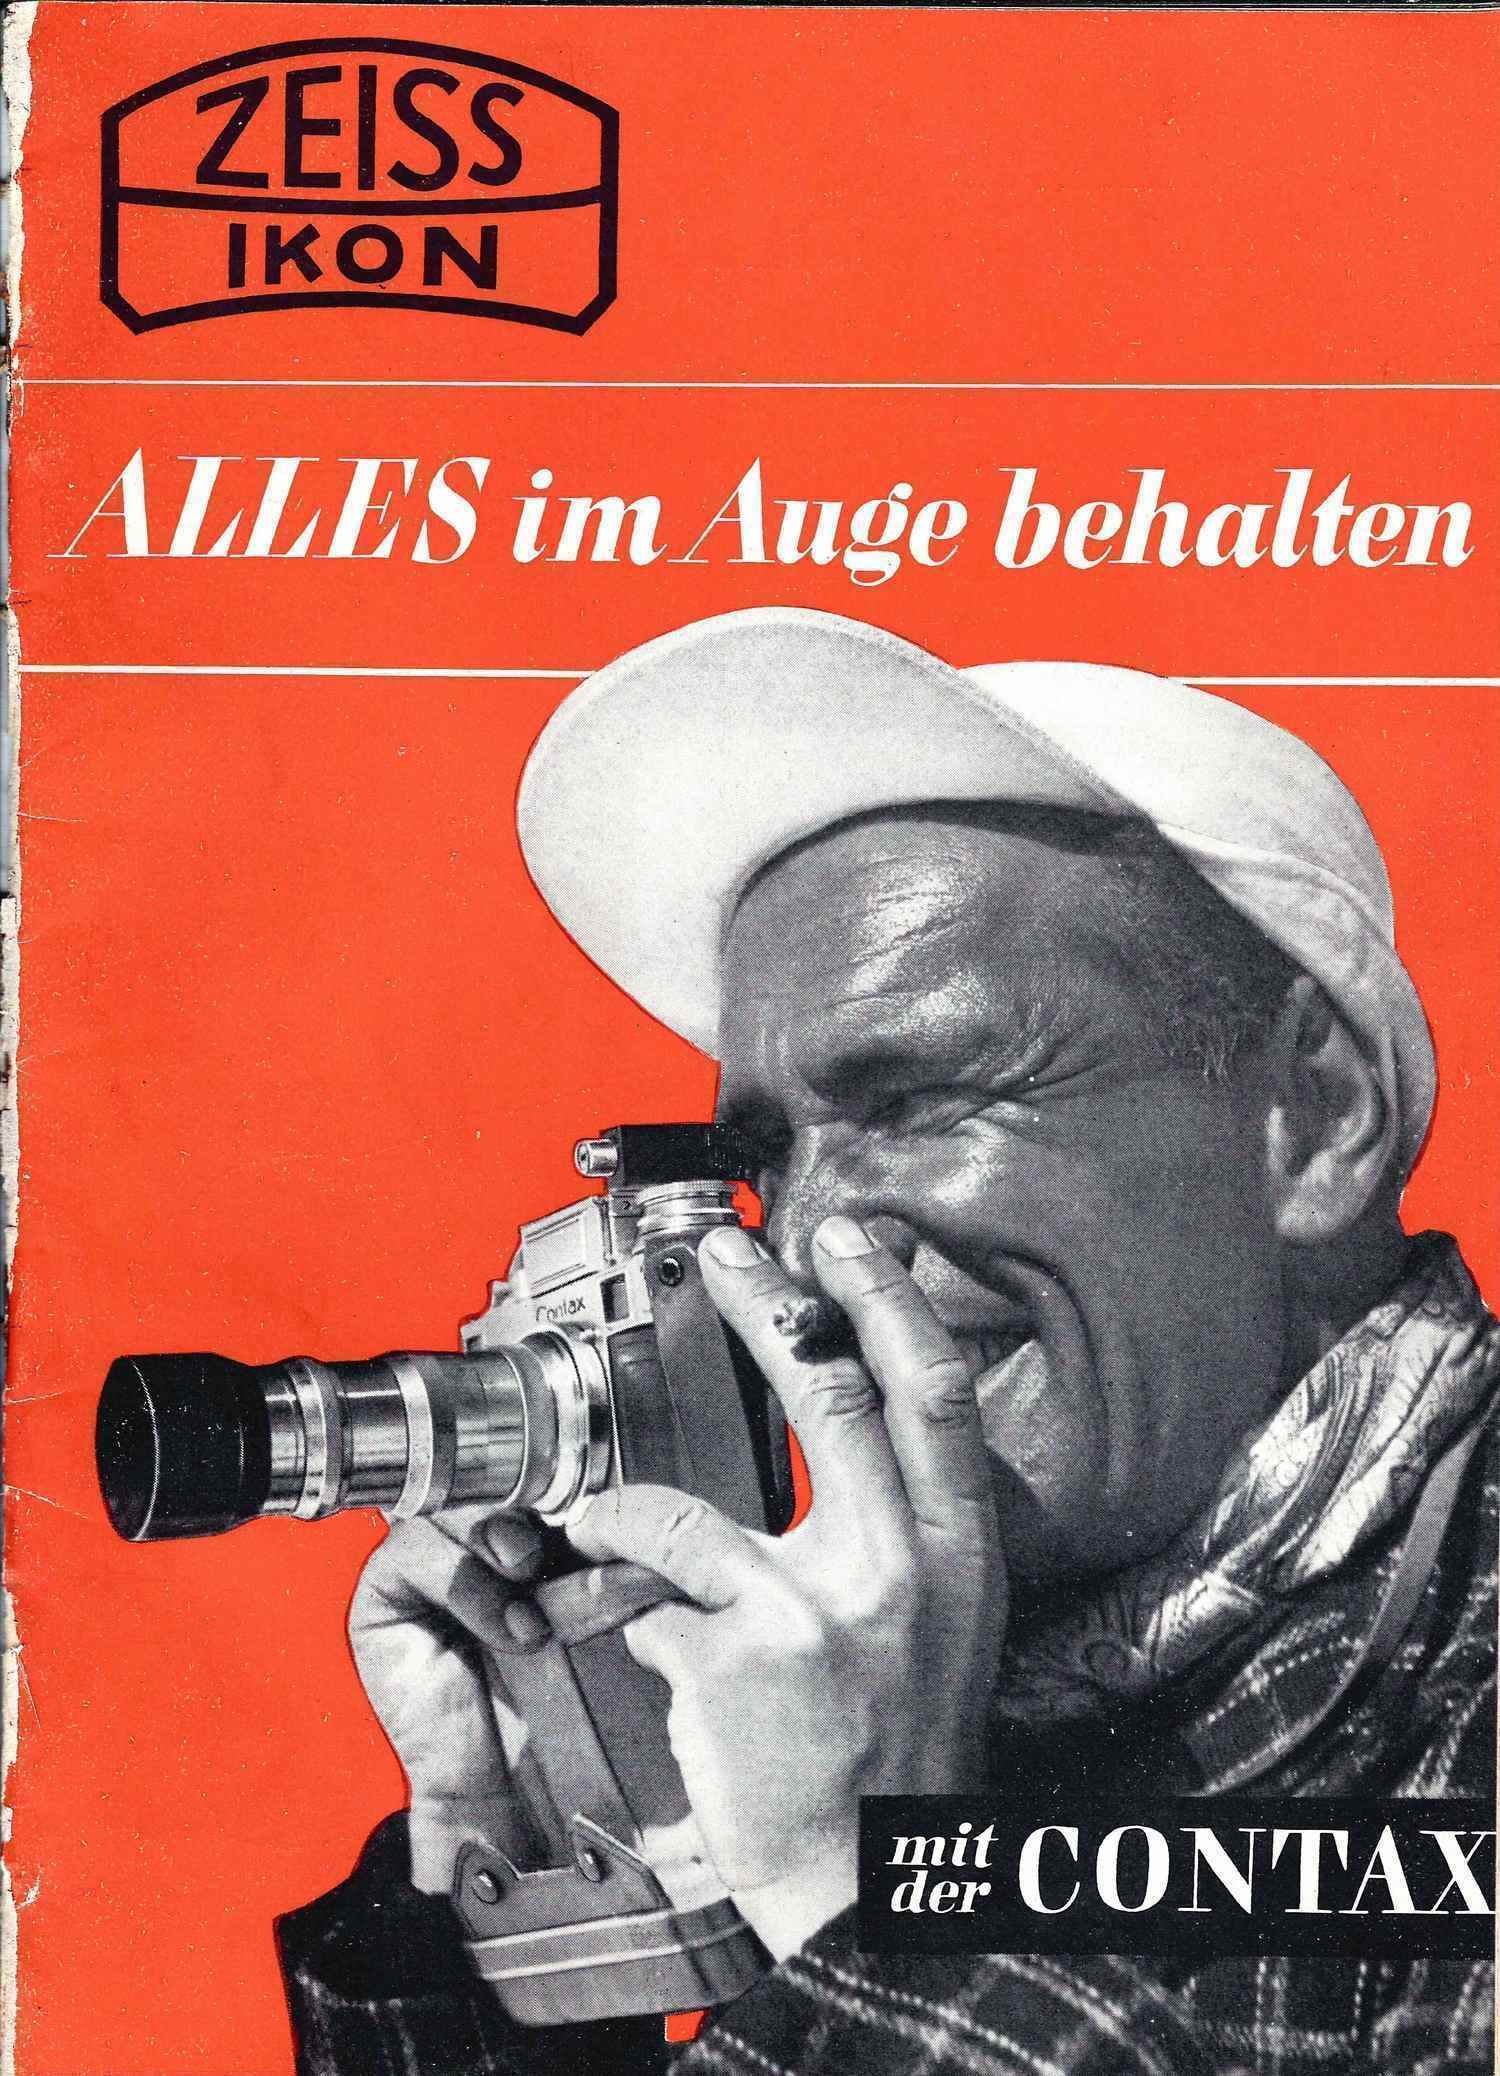 Рекламный проспект фотоаппарата «Контакс». Германия, конец 1940-х - начало 1950-х годов.